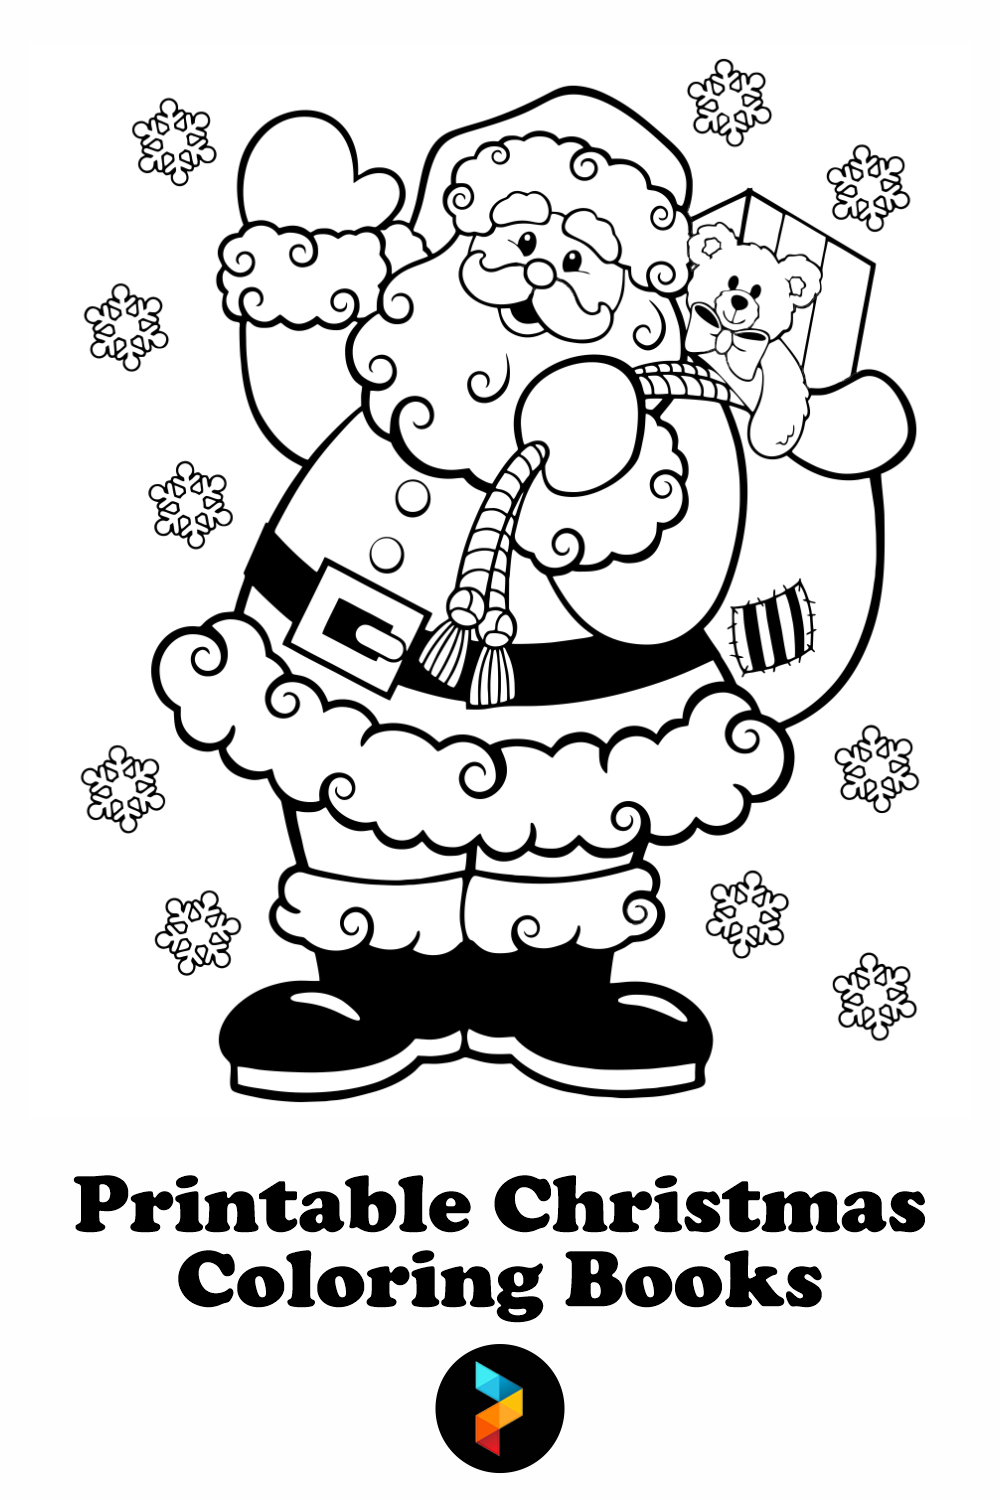 Printable Christmas Coloring Books